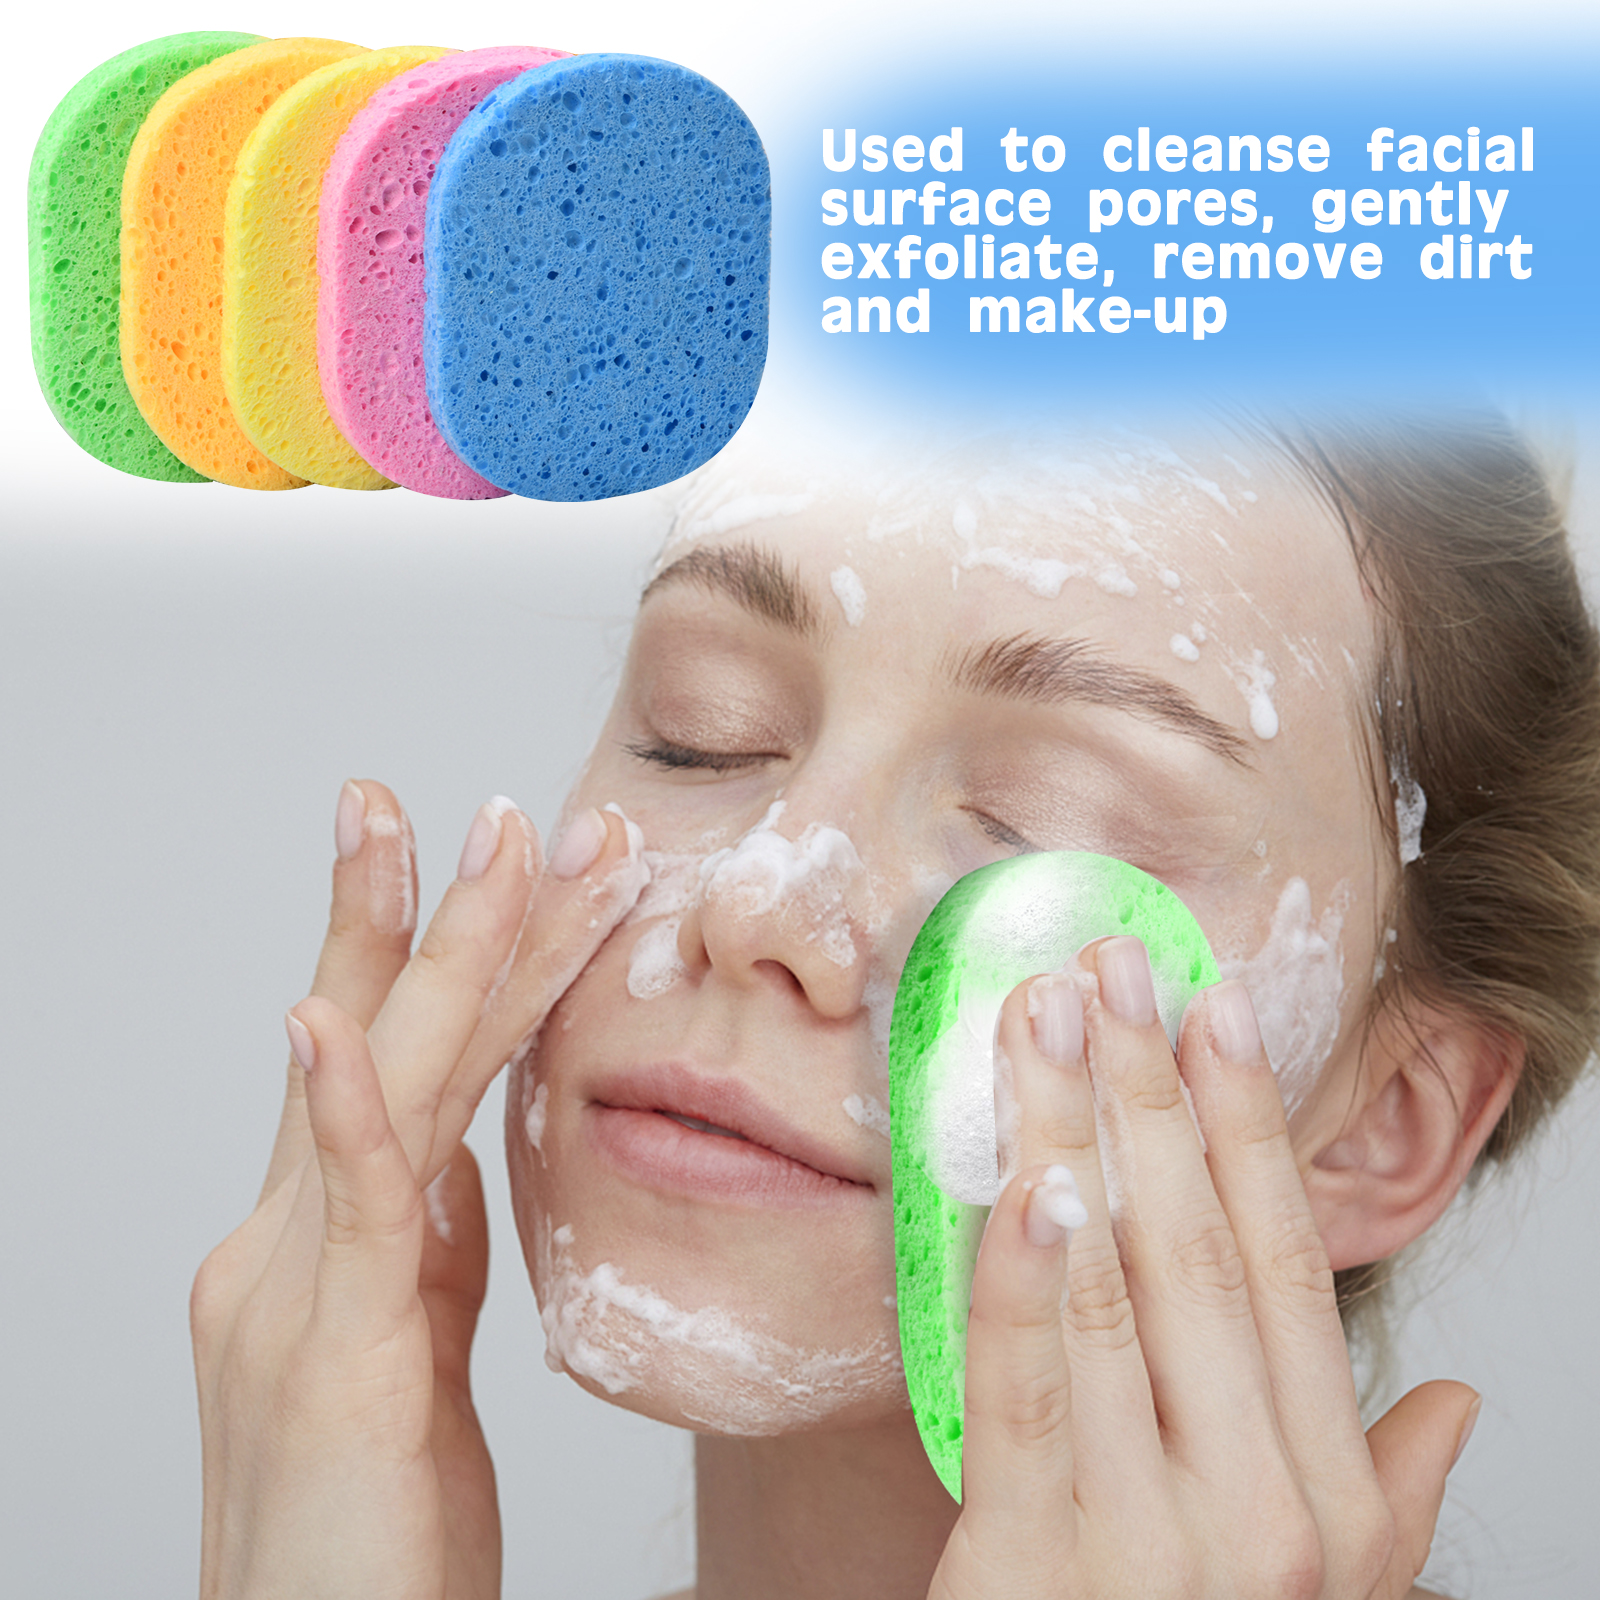 Cómo limpiar las esponjas de maquillaje - Pasos y trucos efectivos